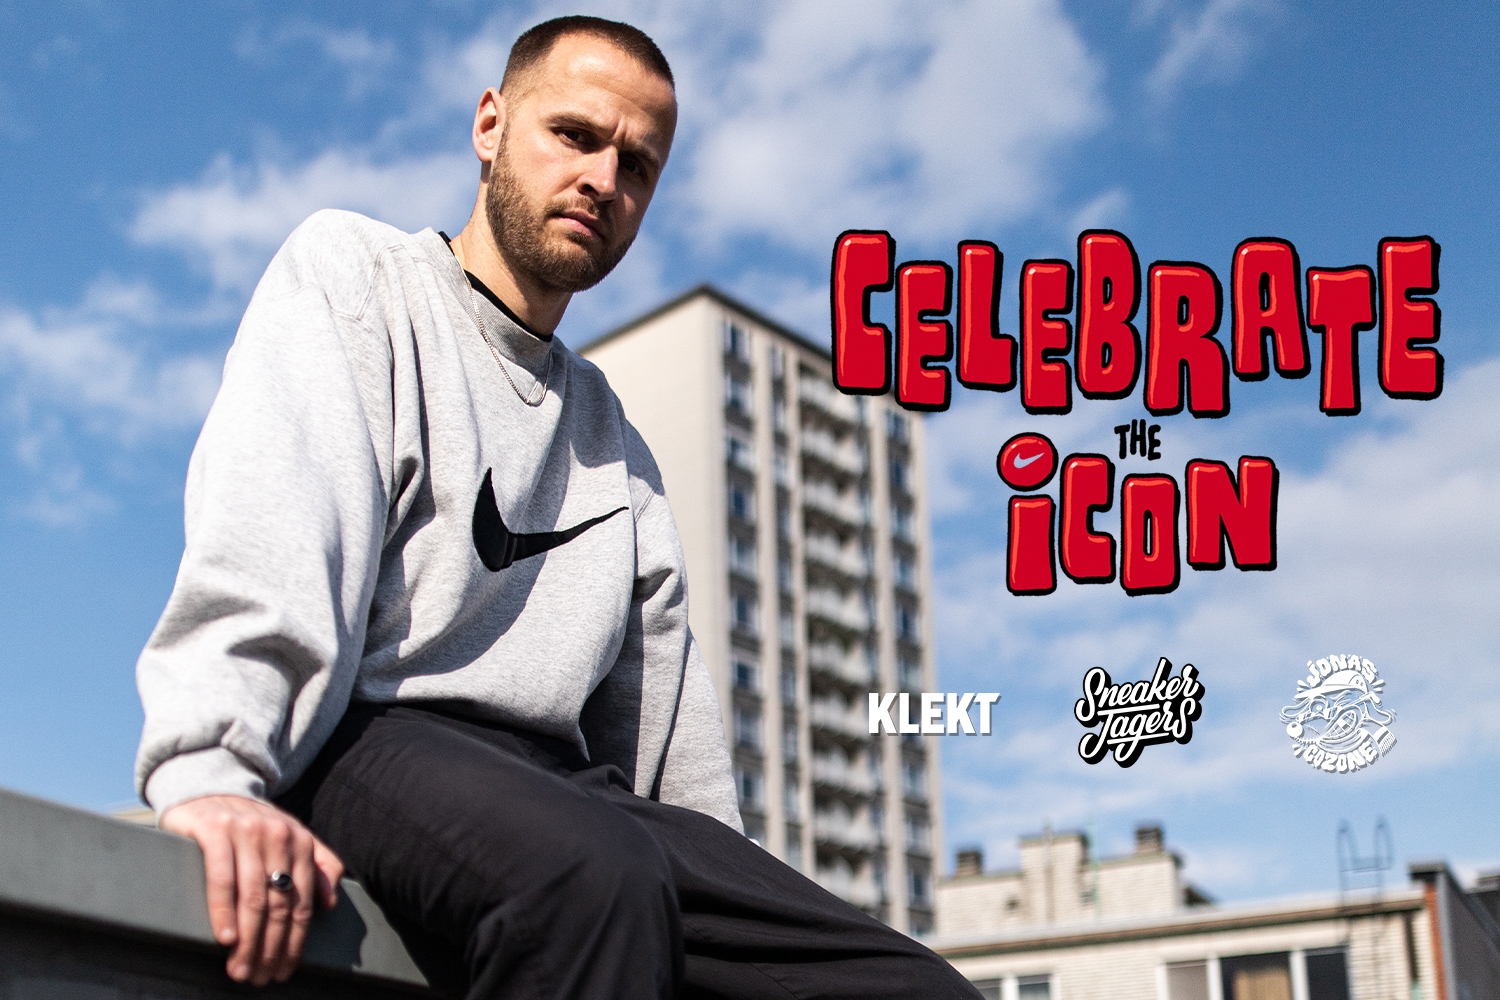 Sneakerjagers Celebrate the Icon week met KLEKT en Jonas Cozone